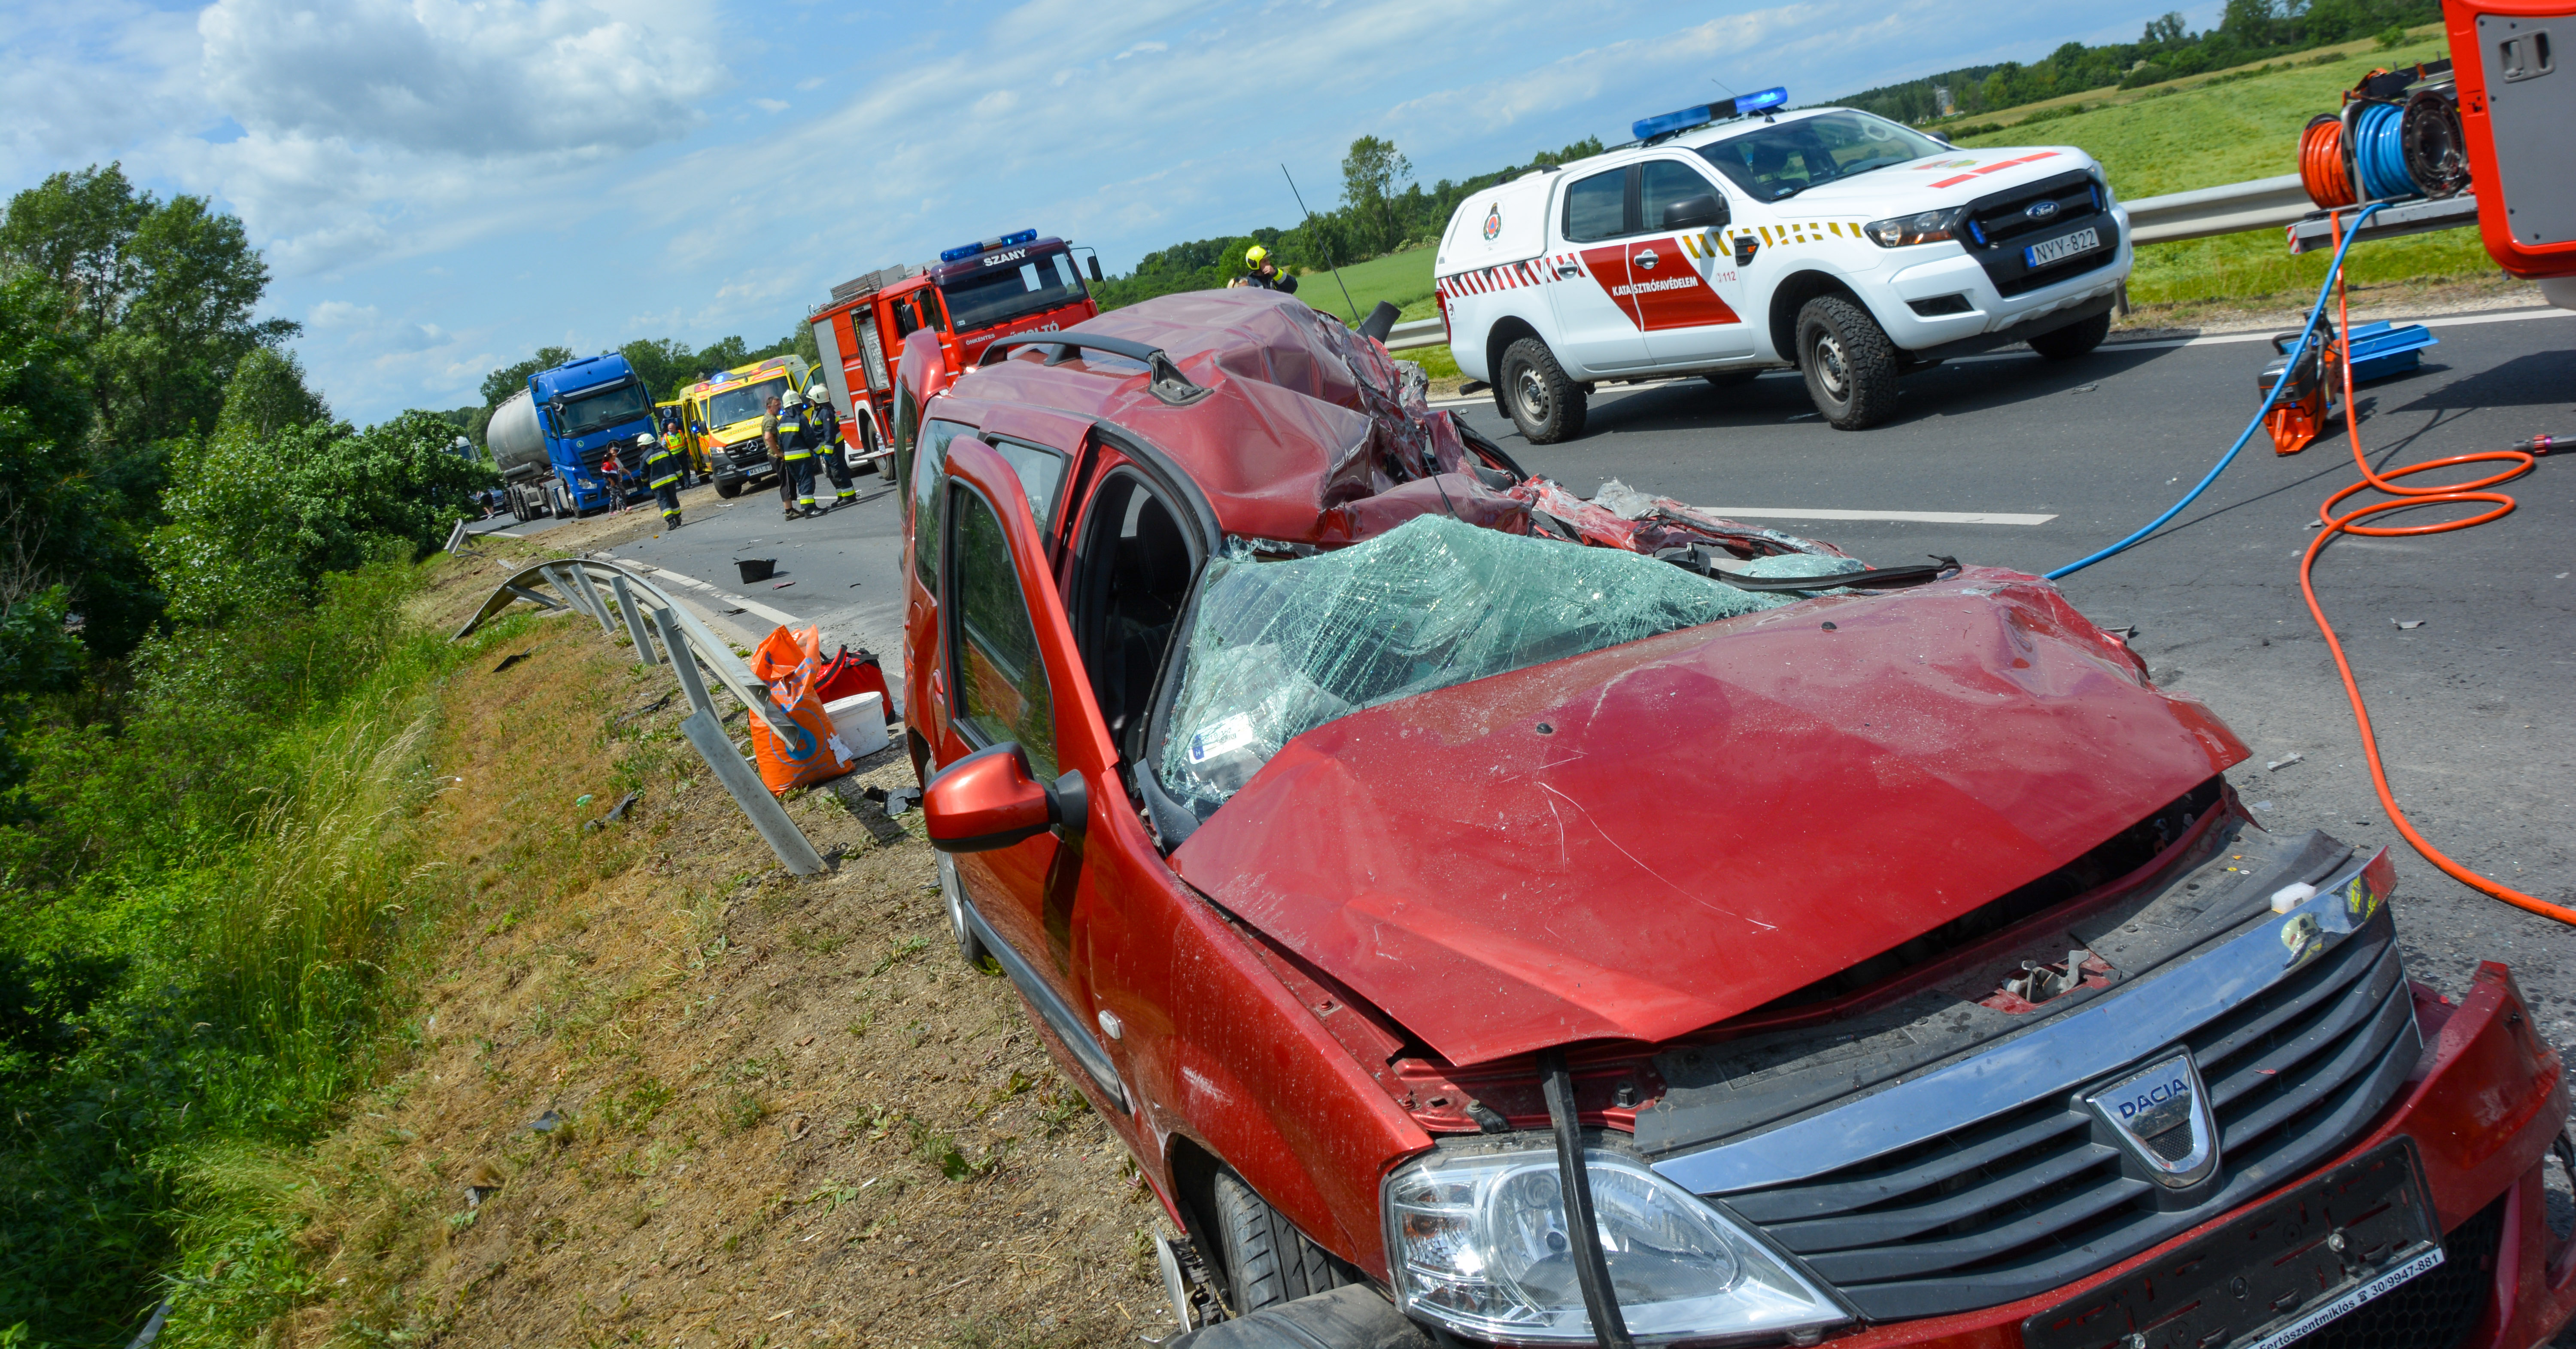 Letarolta a kamion az autót Győr-Moson-Sopron megyében - megrázó fotók a  tragikus balesetről - Blikk